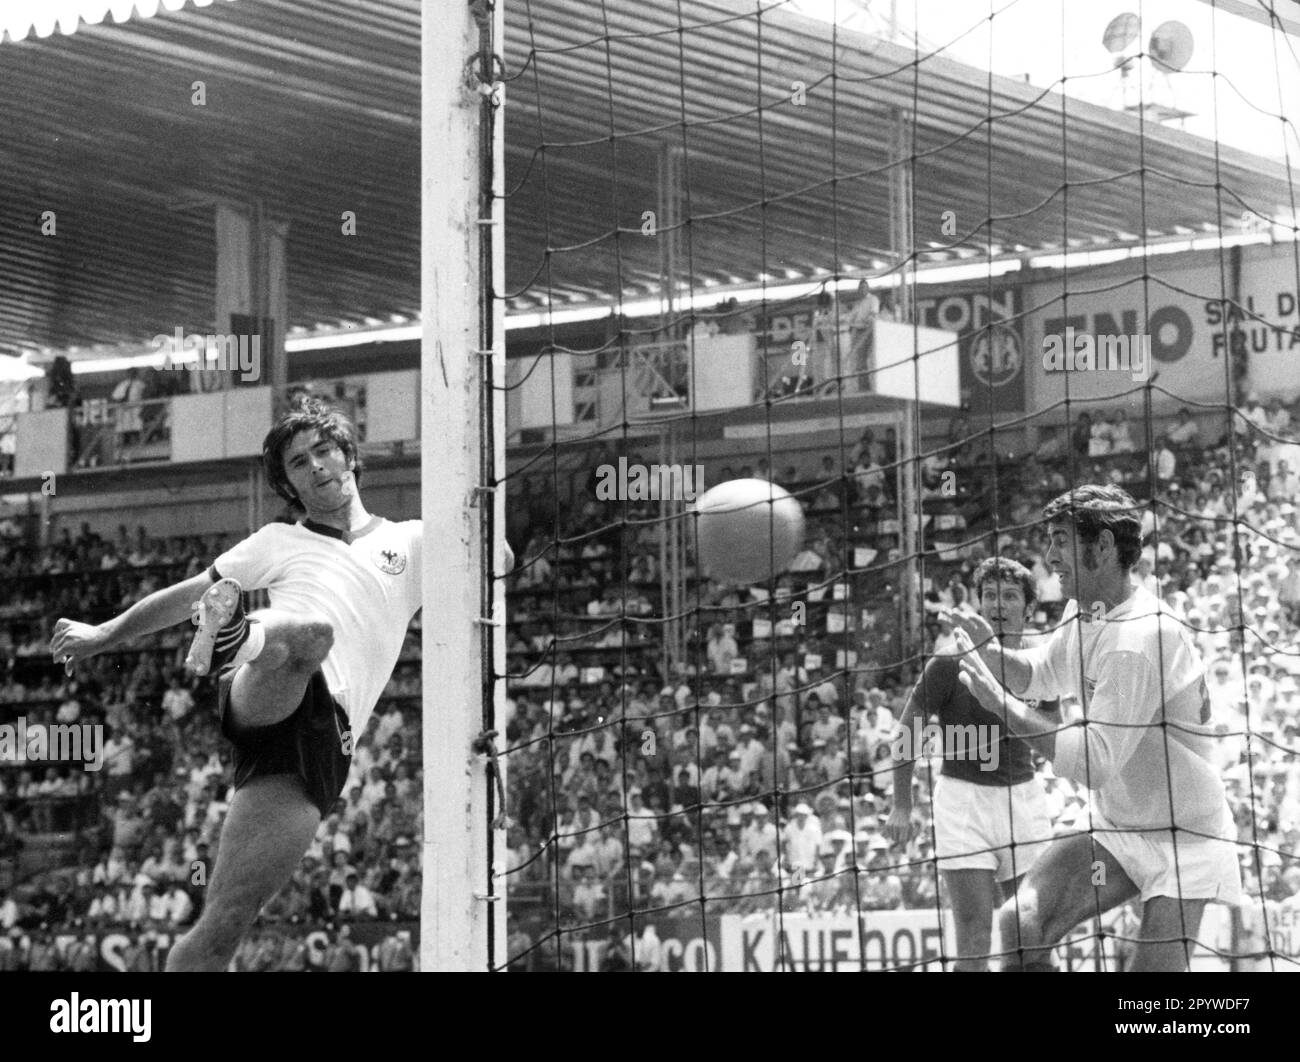 Coupe du monde 1970 au Mexique: Allemagne - Angleterre 3:2 n.V./14.6.1970 dans Leon. But 3:2 (but gagnant) par Gerd Mueller (Deut./li.) Contre le gardien de but Peter Bonetti (Angleterre). [traduction automatique] Banque D'Images